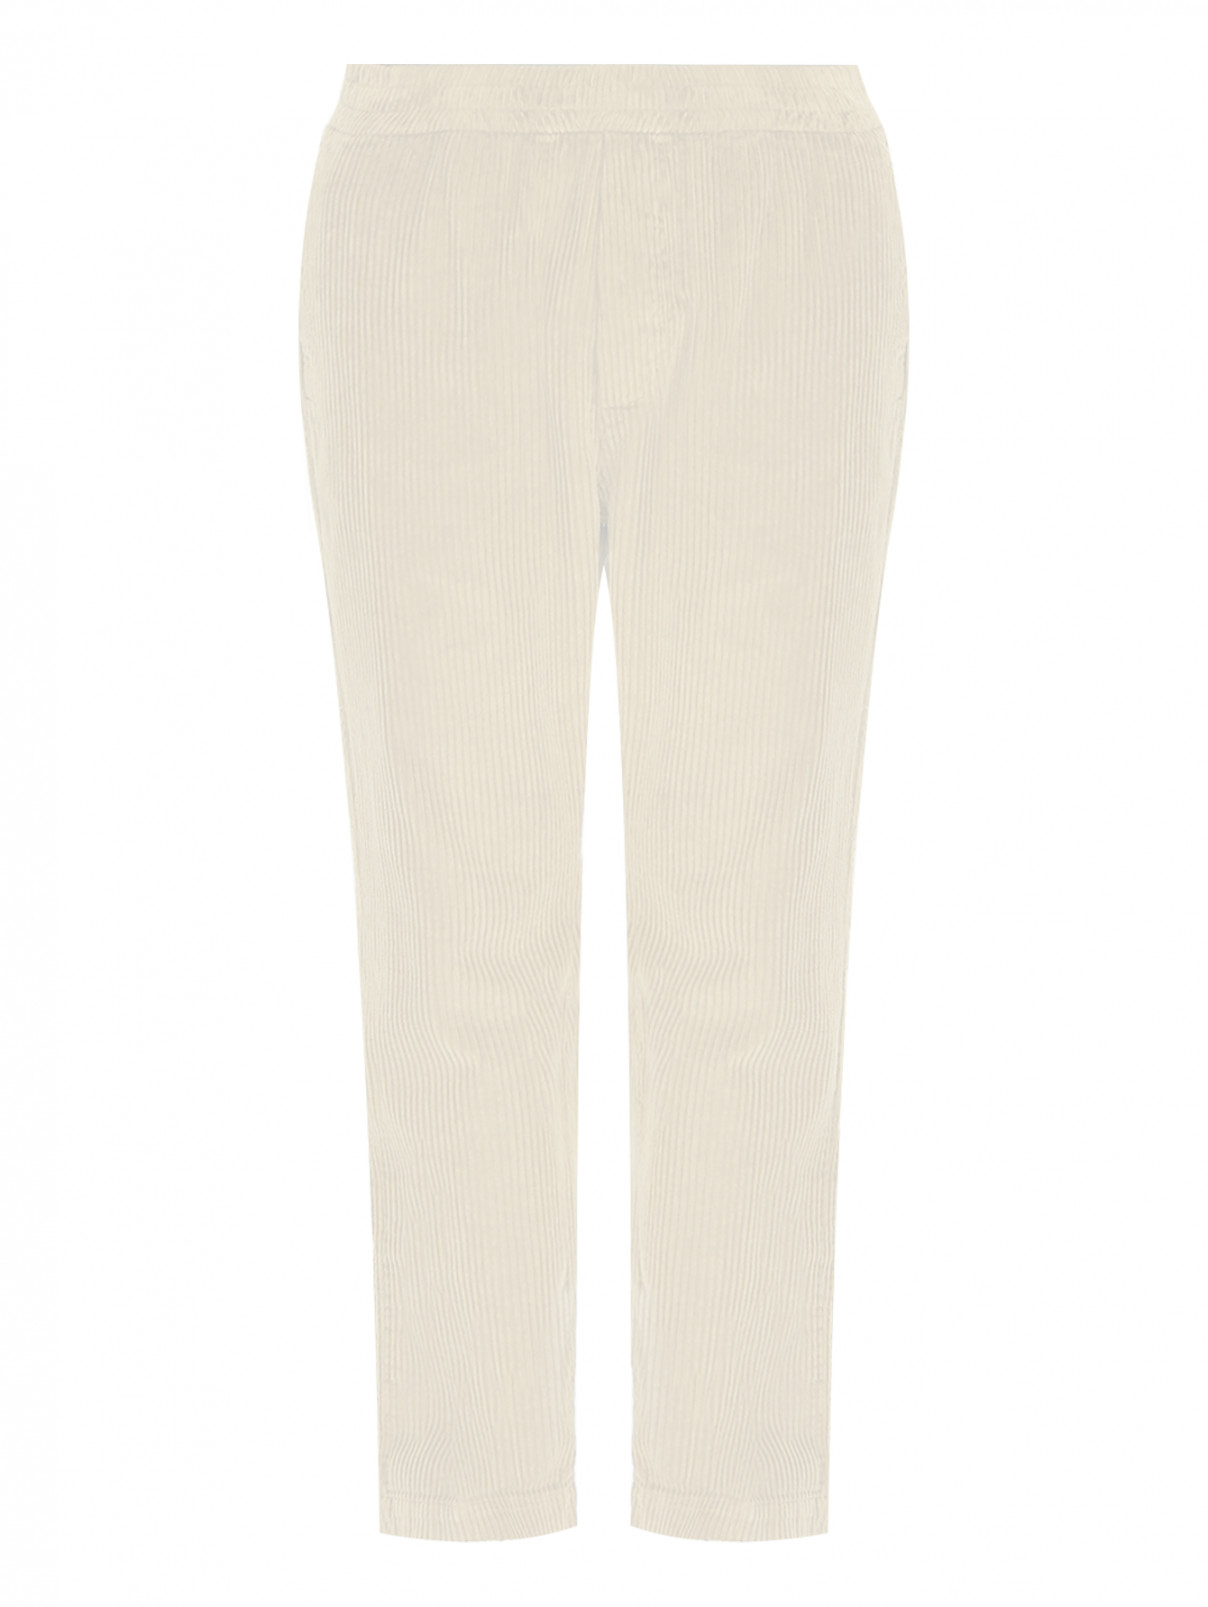 Вельветовые брюки на резинке Barena  –  Общий вид  – Цвет:  Белый